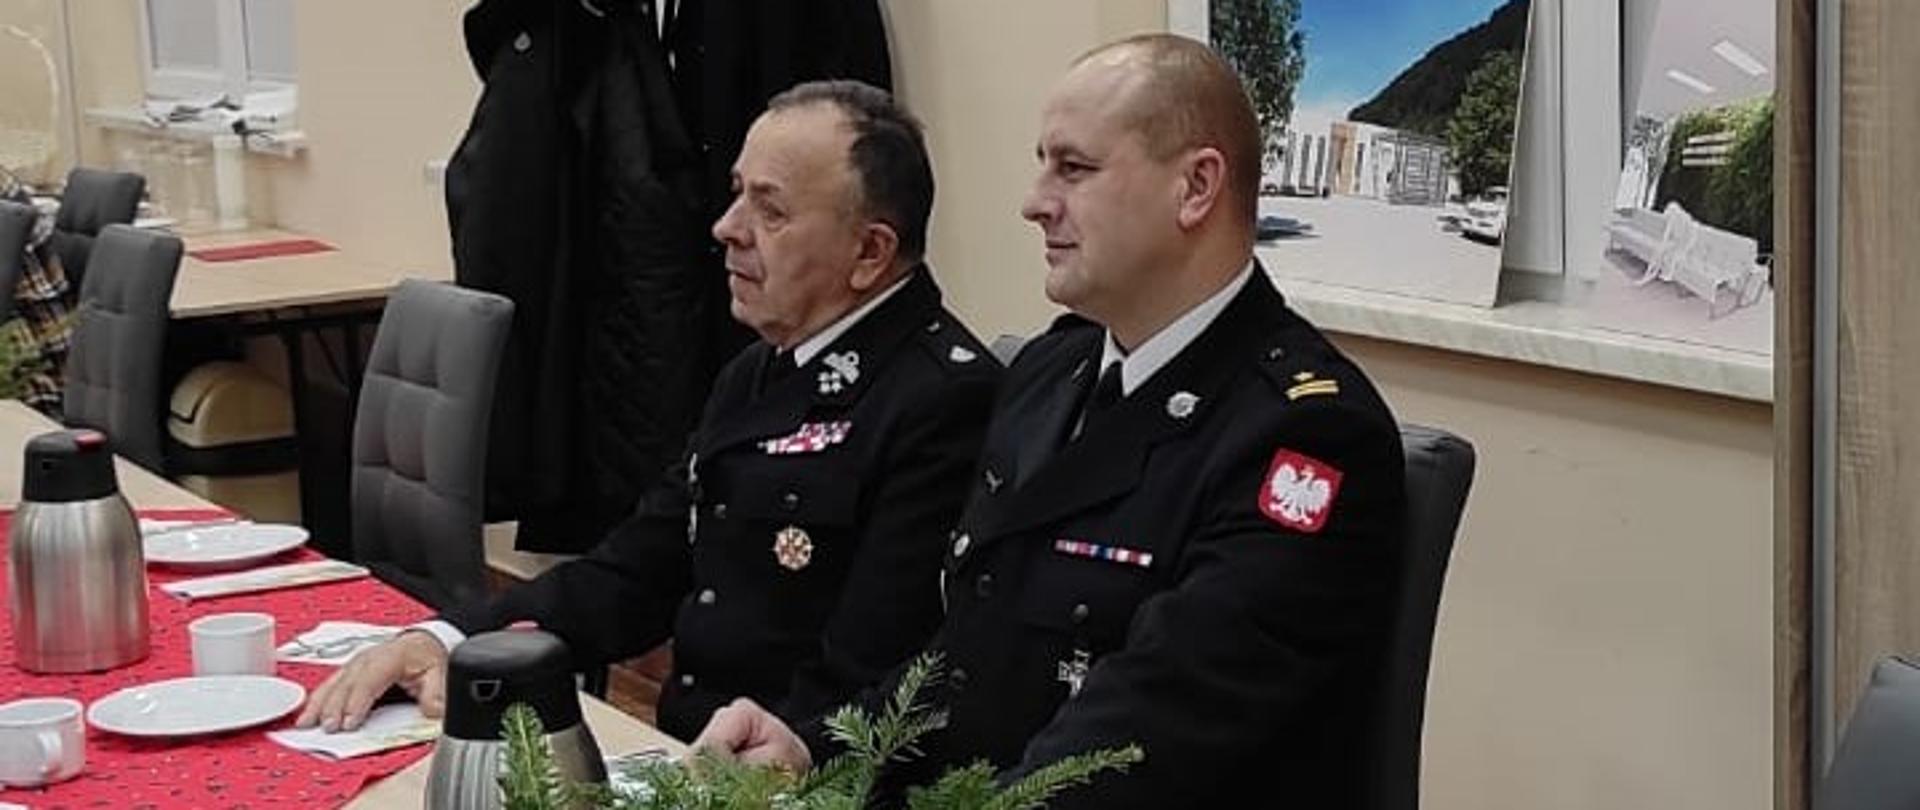 Na zdjęciu widać komendanta powiatowego PSP mł. bryg. Emila Szmyda oraz komendanta powiatowego OSP druha Tadeusza Niedźwieckiego. Siedzą Oni przy stole na którym znajdują się ozdoby świąteczne, szklanki, talerze i termosy. 